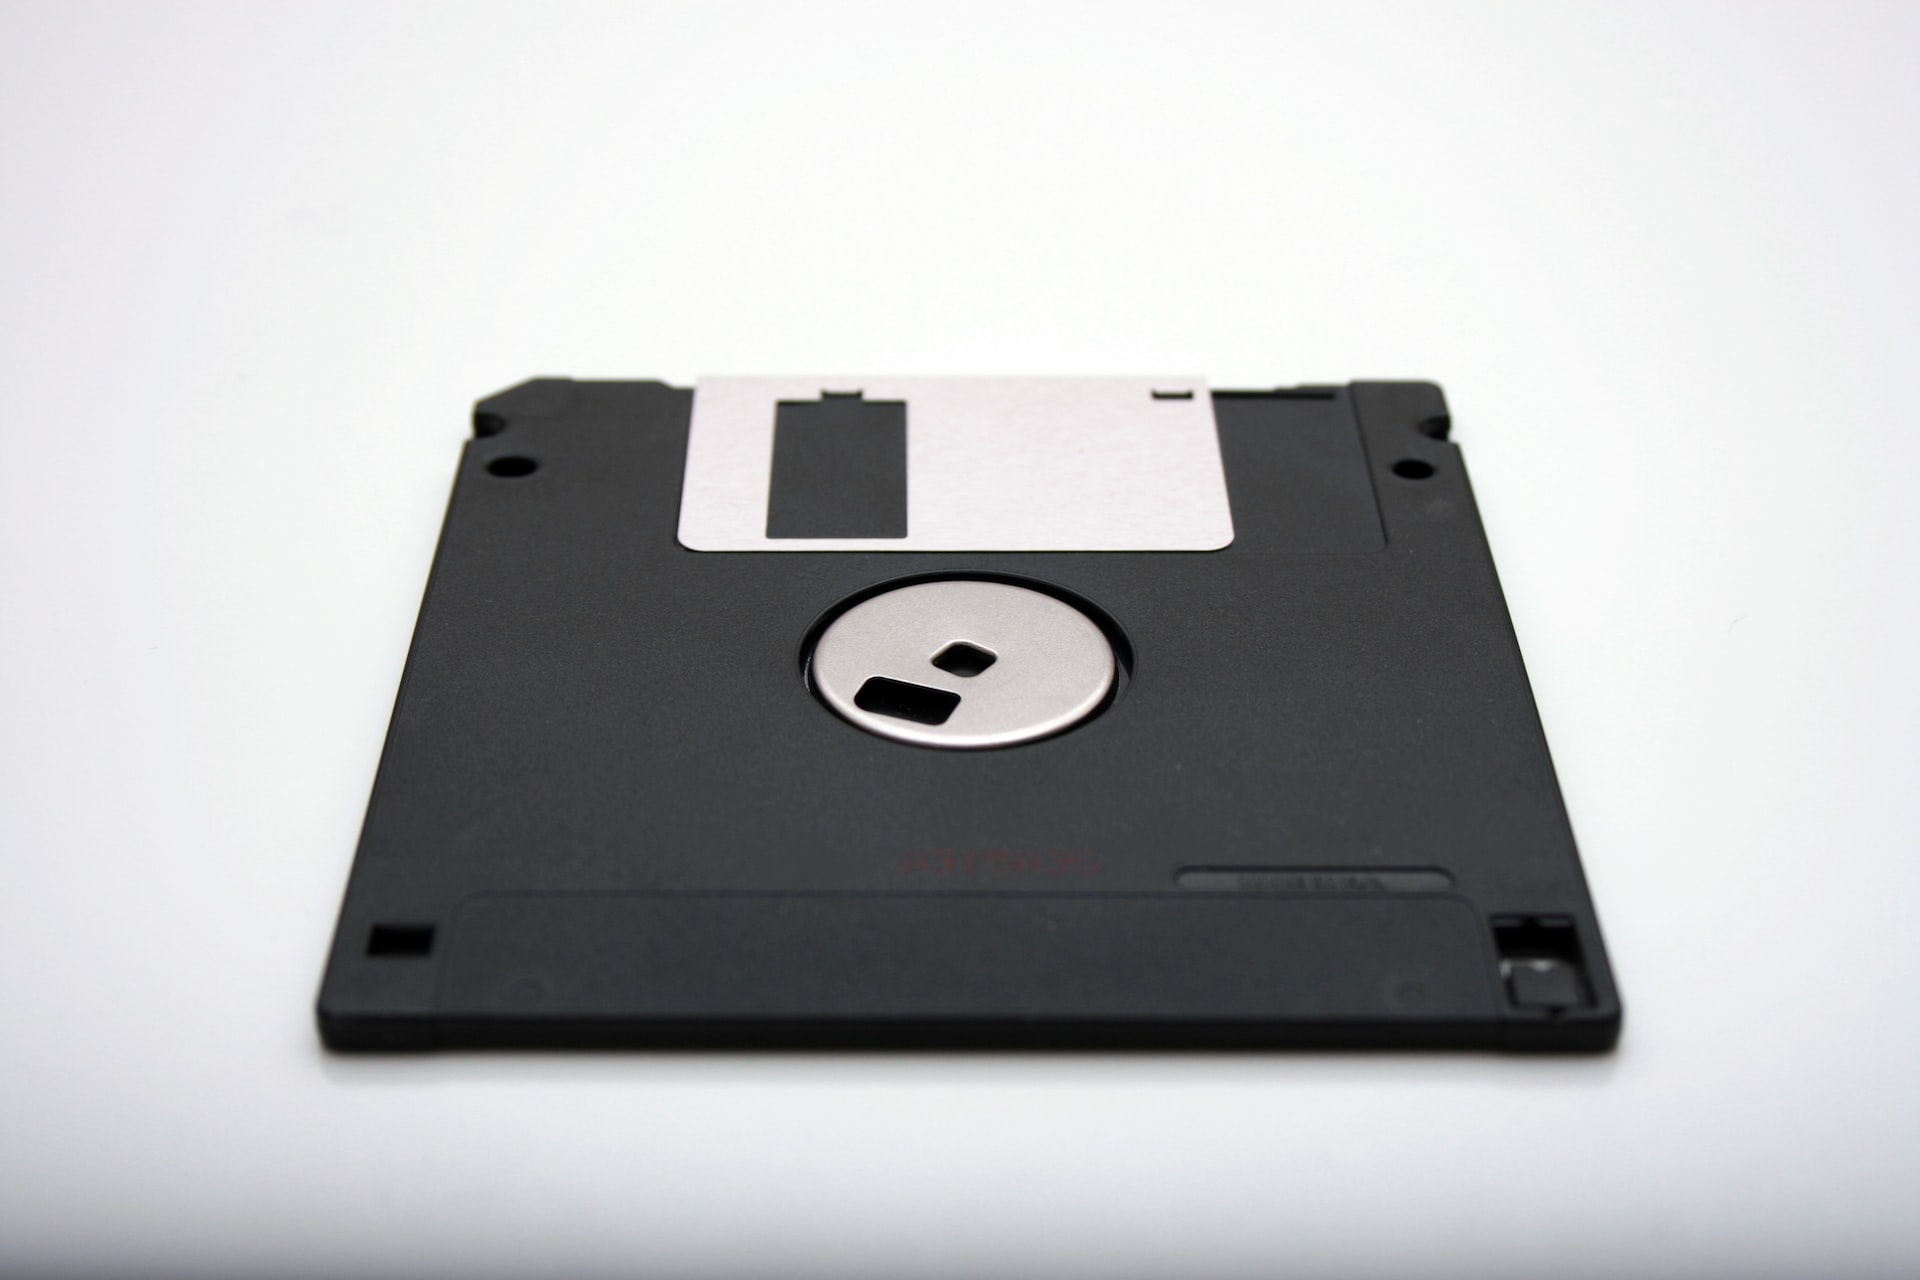 Japão está pronto para abandonar disquetes e CD-ROMs